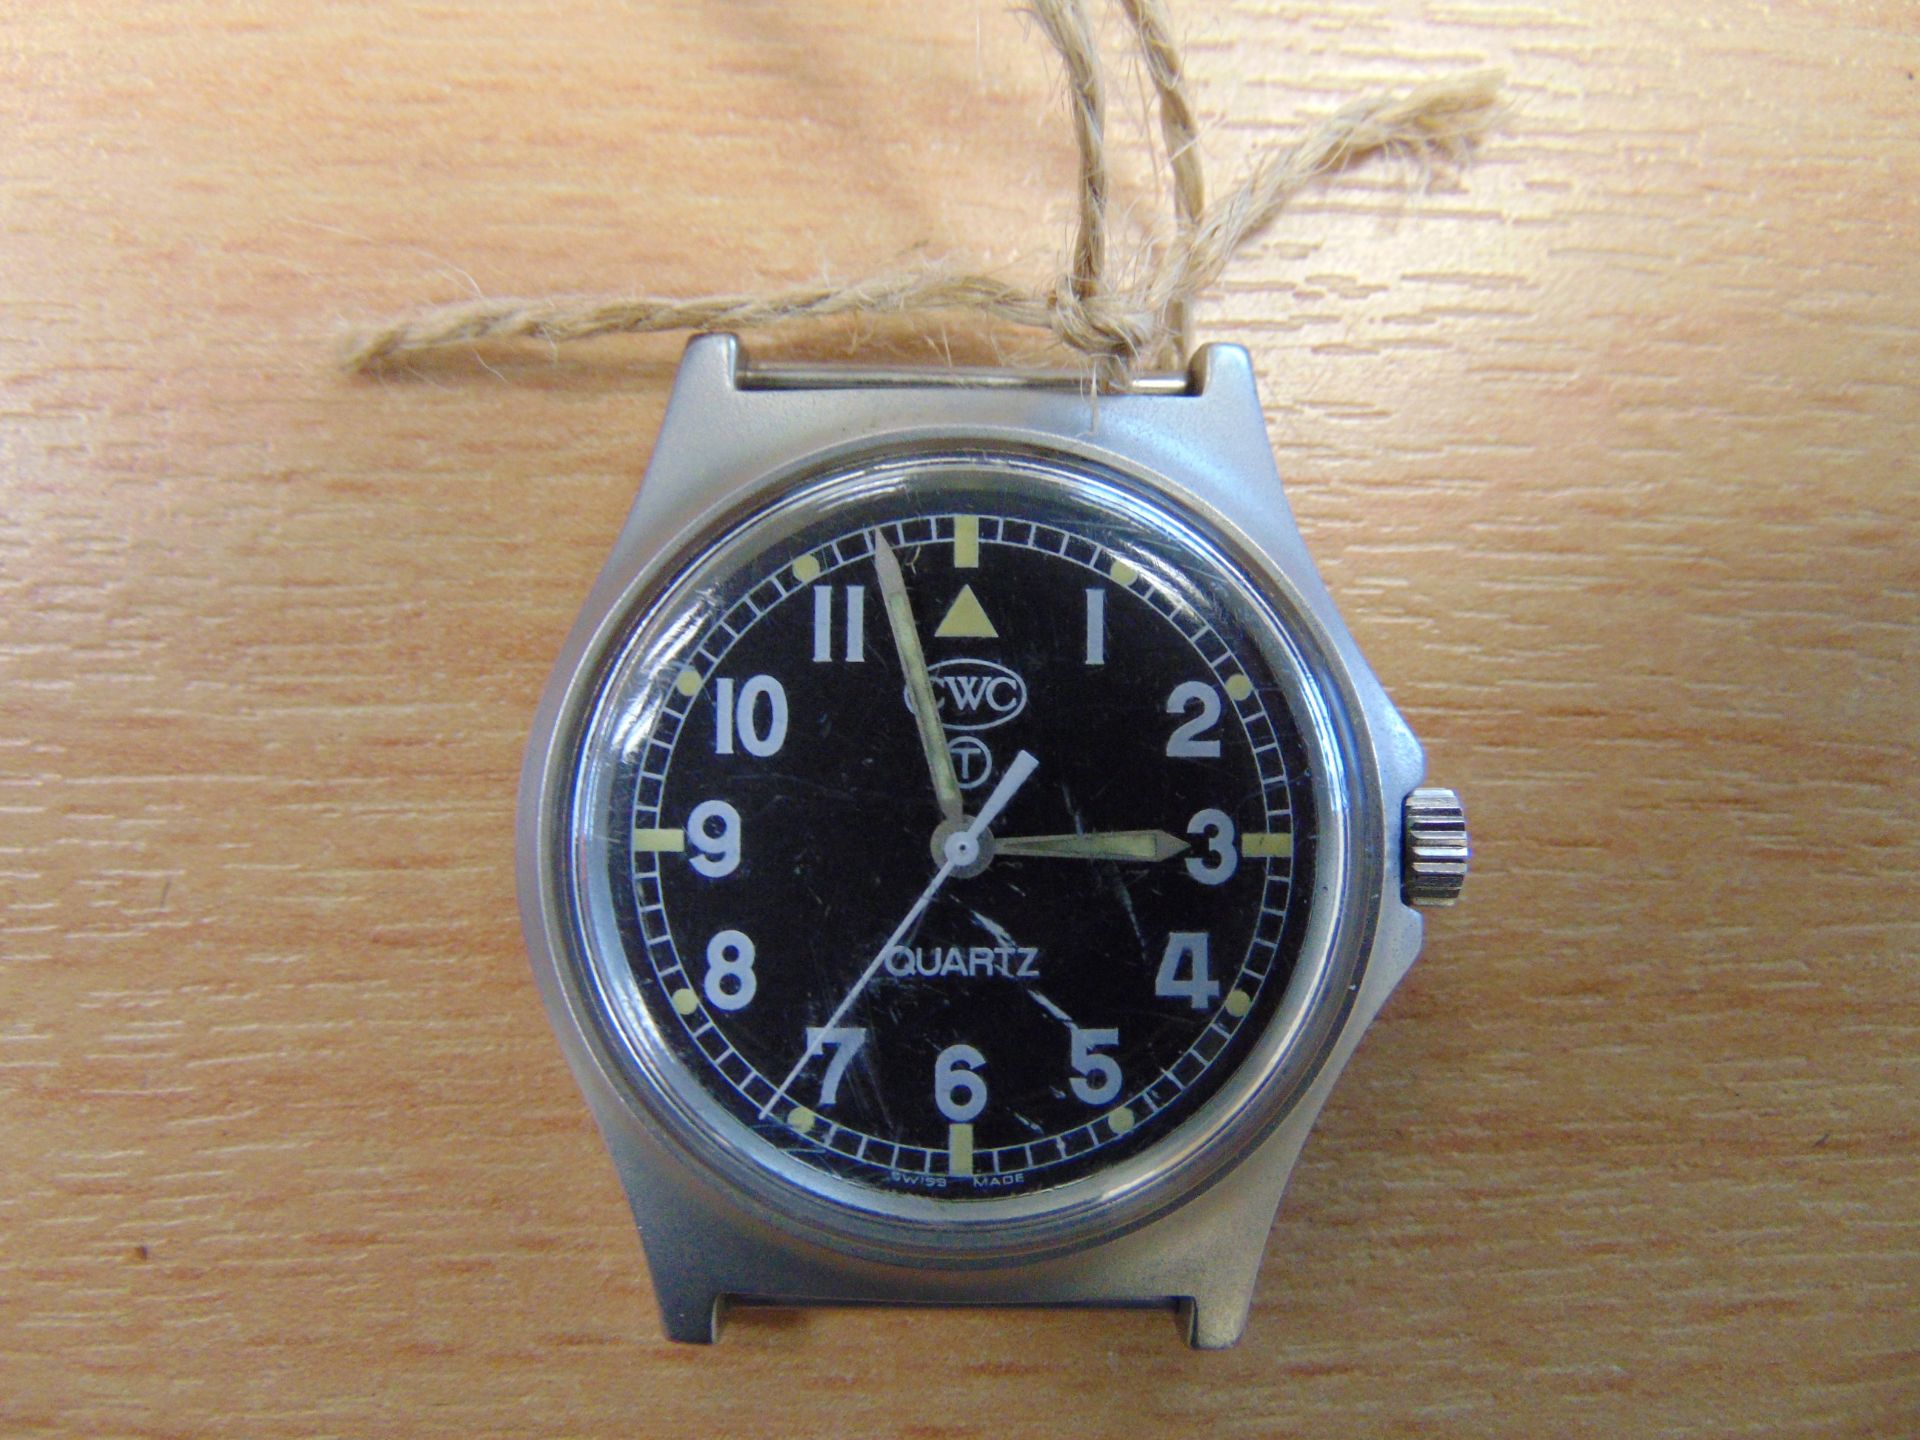 CWC (Cabot Watch Co Switzerland) British Army W10 Service Watch, Water Resistant to 5 ATM - Bild 2 aus 4